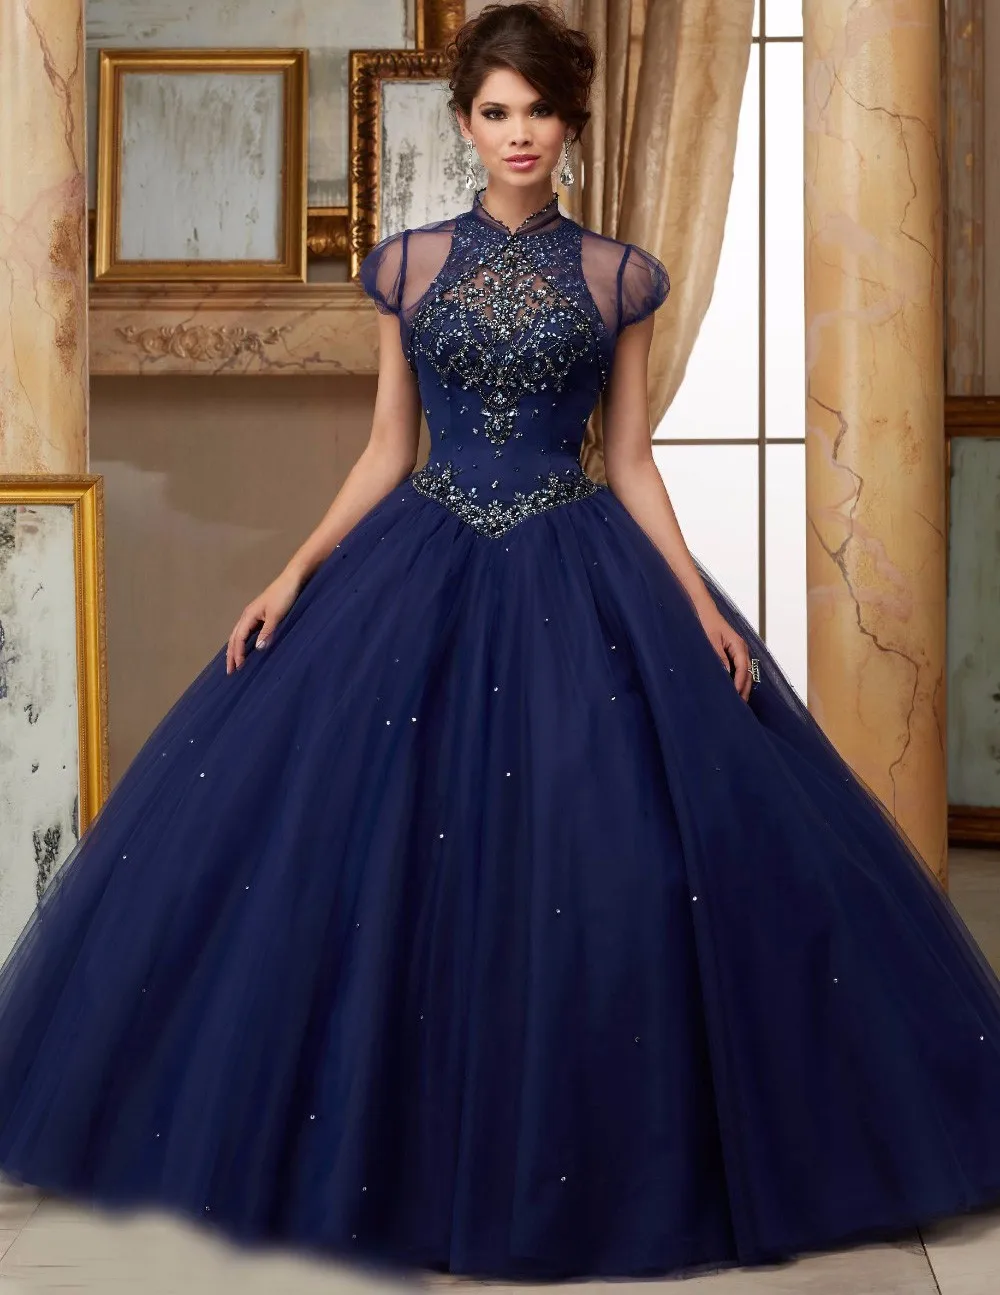 Новая мода Бальные платья Scoop Neck Кристаллы подробности Темно-синие мягкий тюль Принцесса Пышное Платье для сладких 16 лет